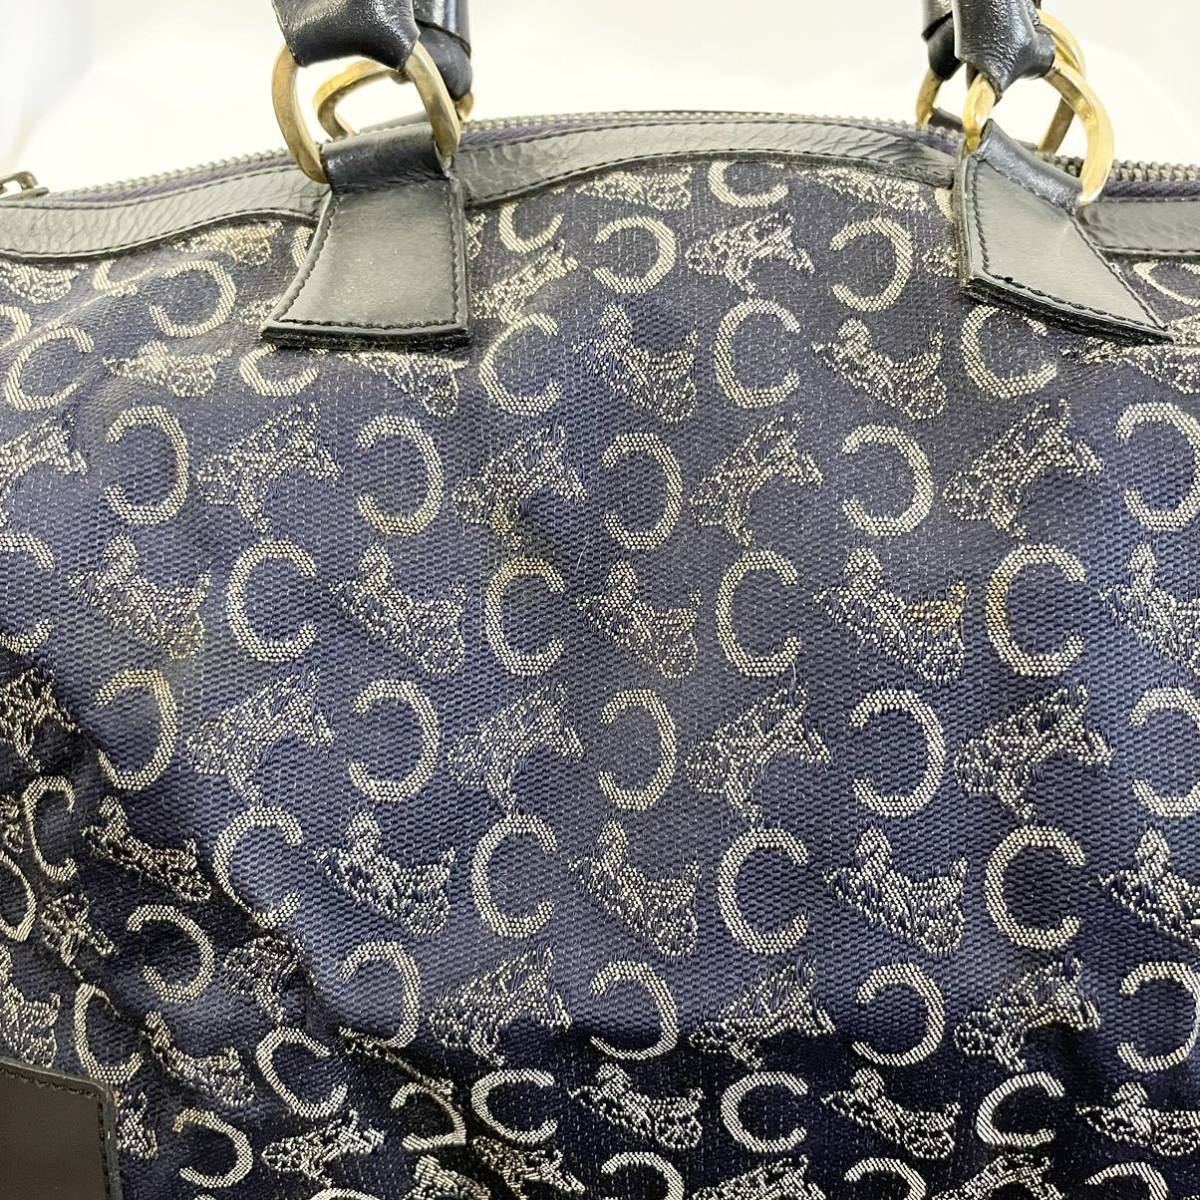 正規品 セリーヌ  ミニボストン ハンドバッグ キャンバス 青 ブルー 紺 ネイビー カバン 鞄